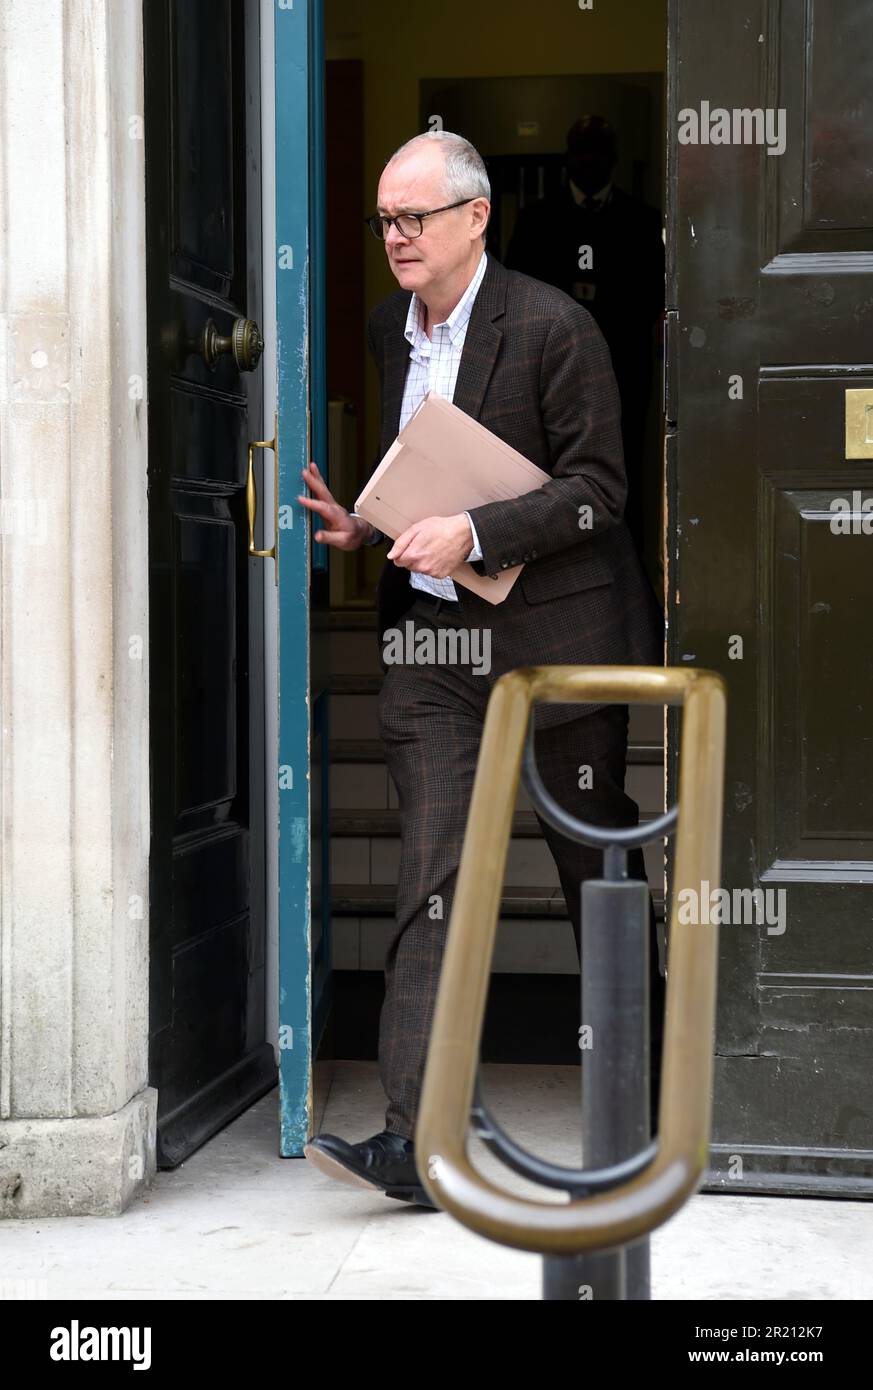 Foto von Sir Patrick Vallance, wissenschaftlicher Berater der Regierung und Leiter der Regierung Wissenschaft und Technik, vor dem Kabinettsbüro in Whitehall, London, nach einer Dringlichkeitssitzung VON COBRA, während die Besorgnis über den COVID-19-Ausbruch des Coronavirus zunimmt. Stockfoto